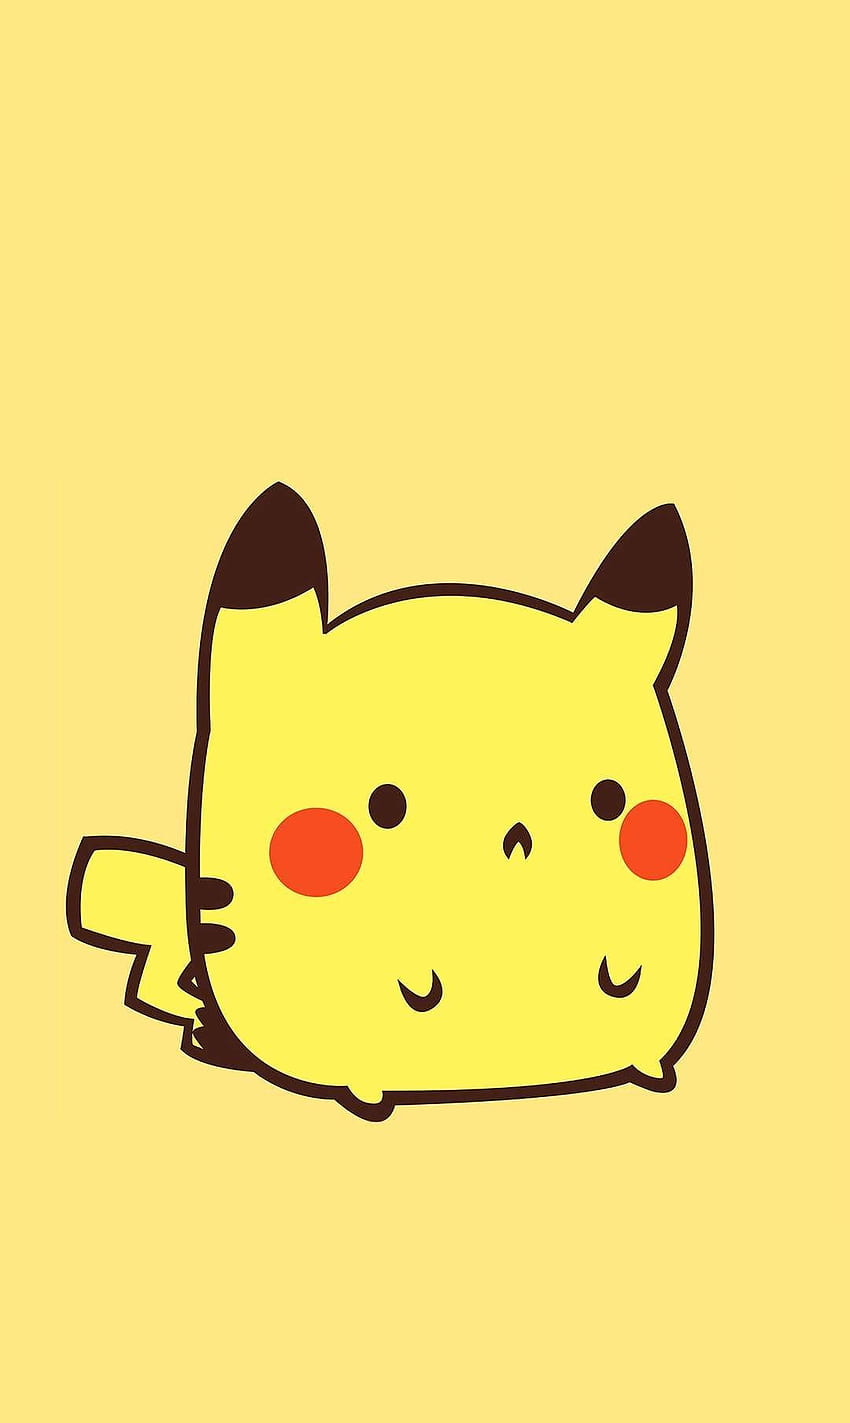 君の言葉 on Pikachu. Pikachu art, Pikachu drawing, Pikachu chibi ...